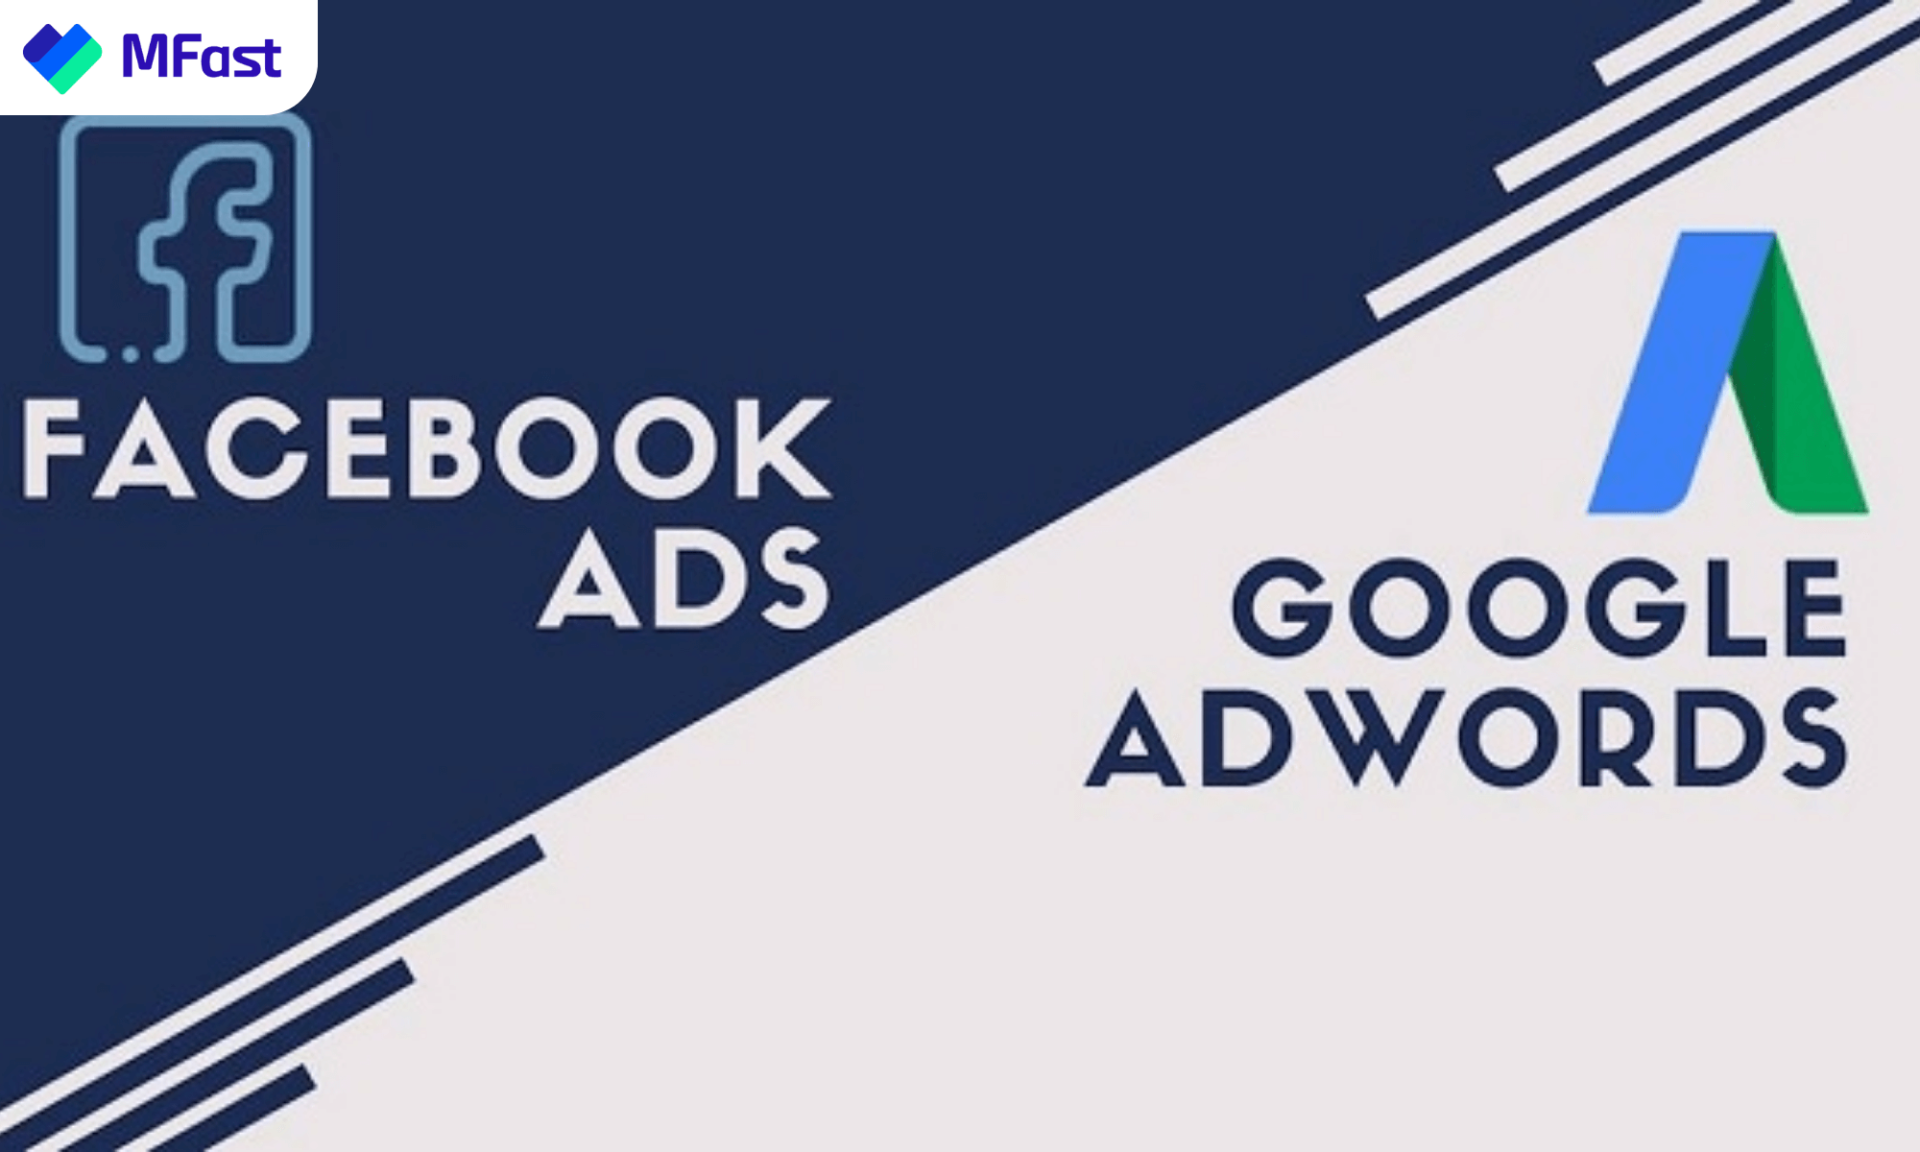 Facebook Ads hoặc Google AdWords là 2 công cụ quảng cáo có tính phí hiện nay